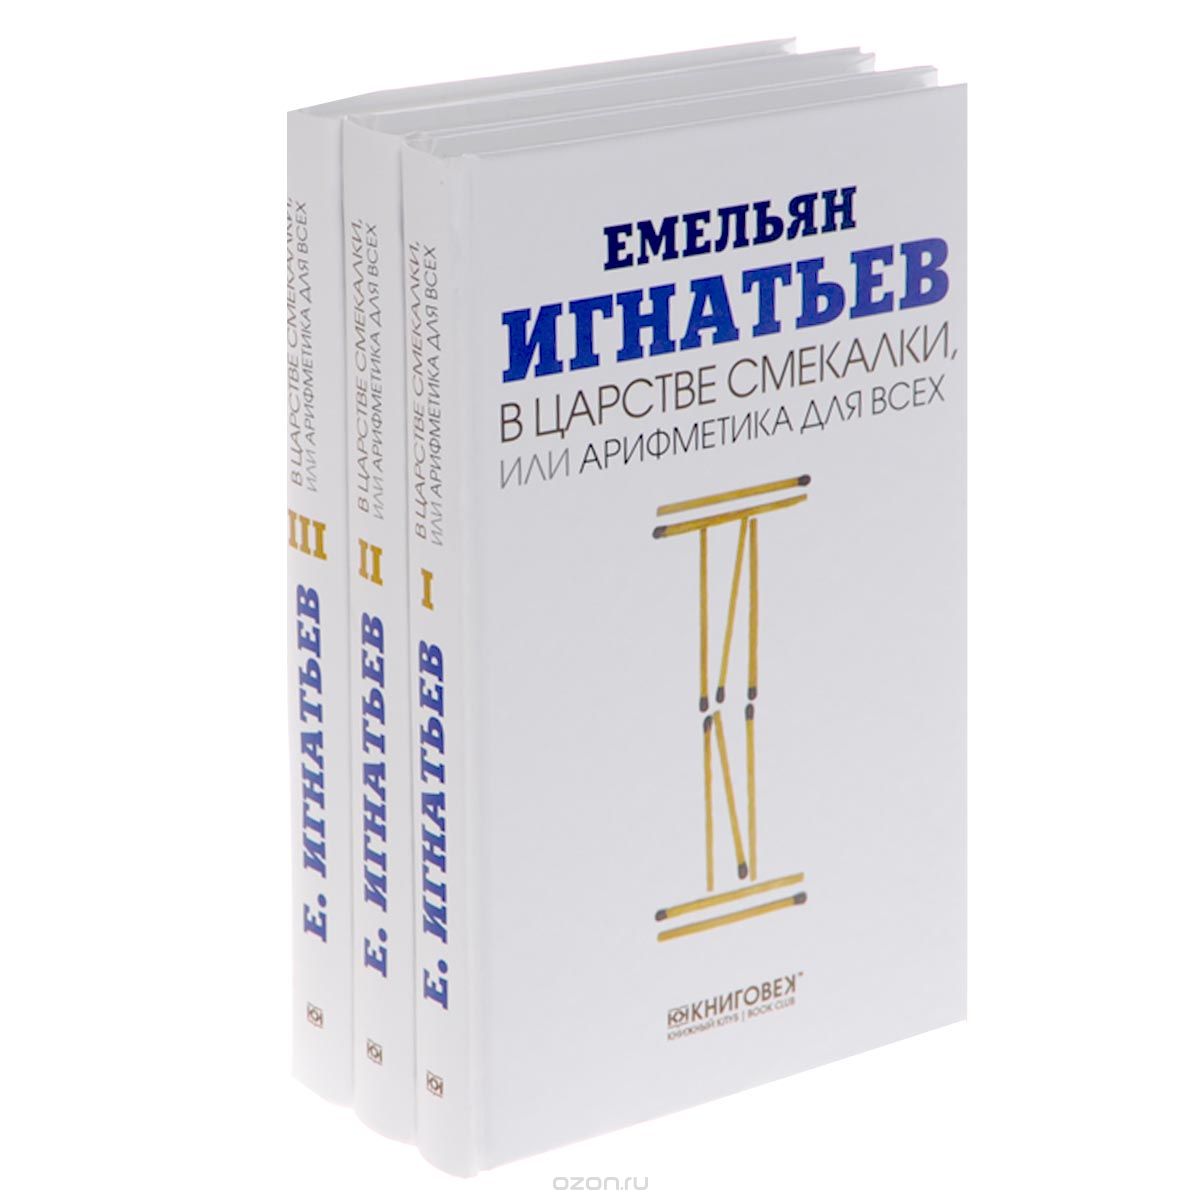 Скачать книгу "В царстве смекалки, или Арифметика для всех (комплект из 3 книг), Емельян Игнатьев"